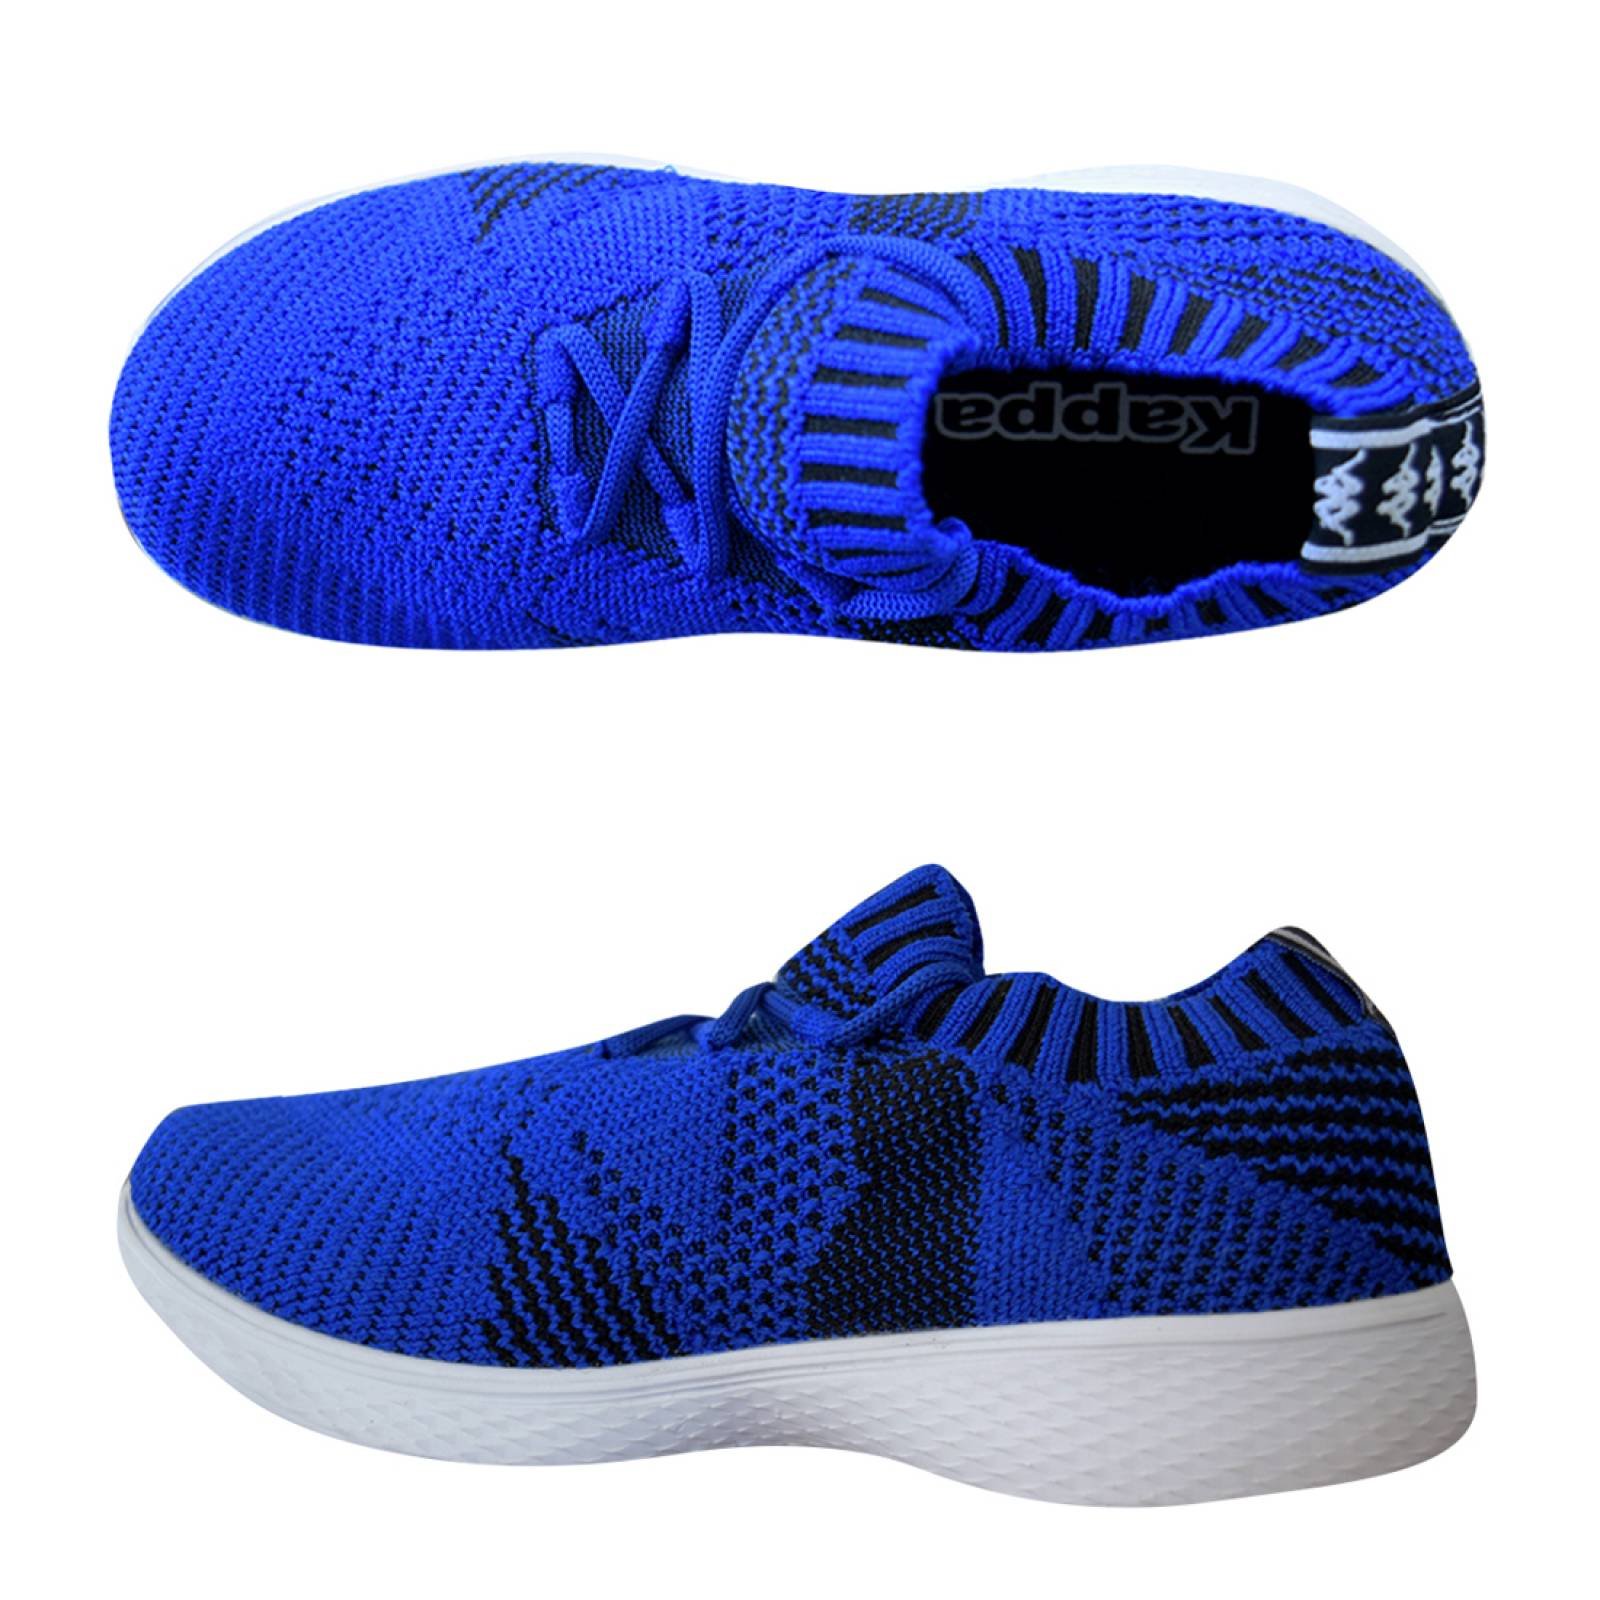 Zapato Tenis Casual Tejido Niño Infantil Azul Rey/Ngo Kappa